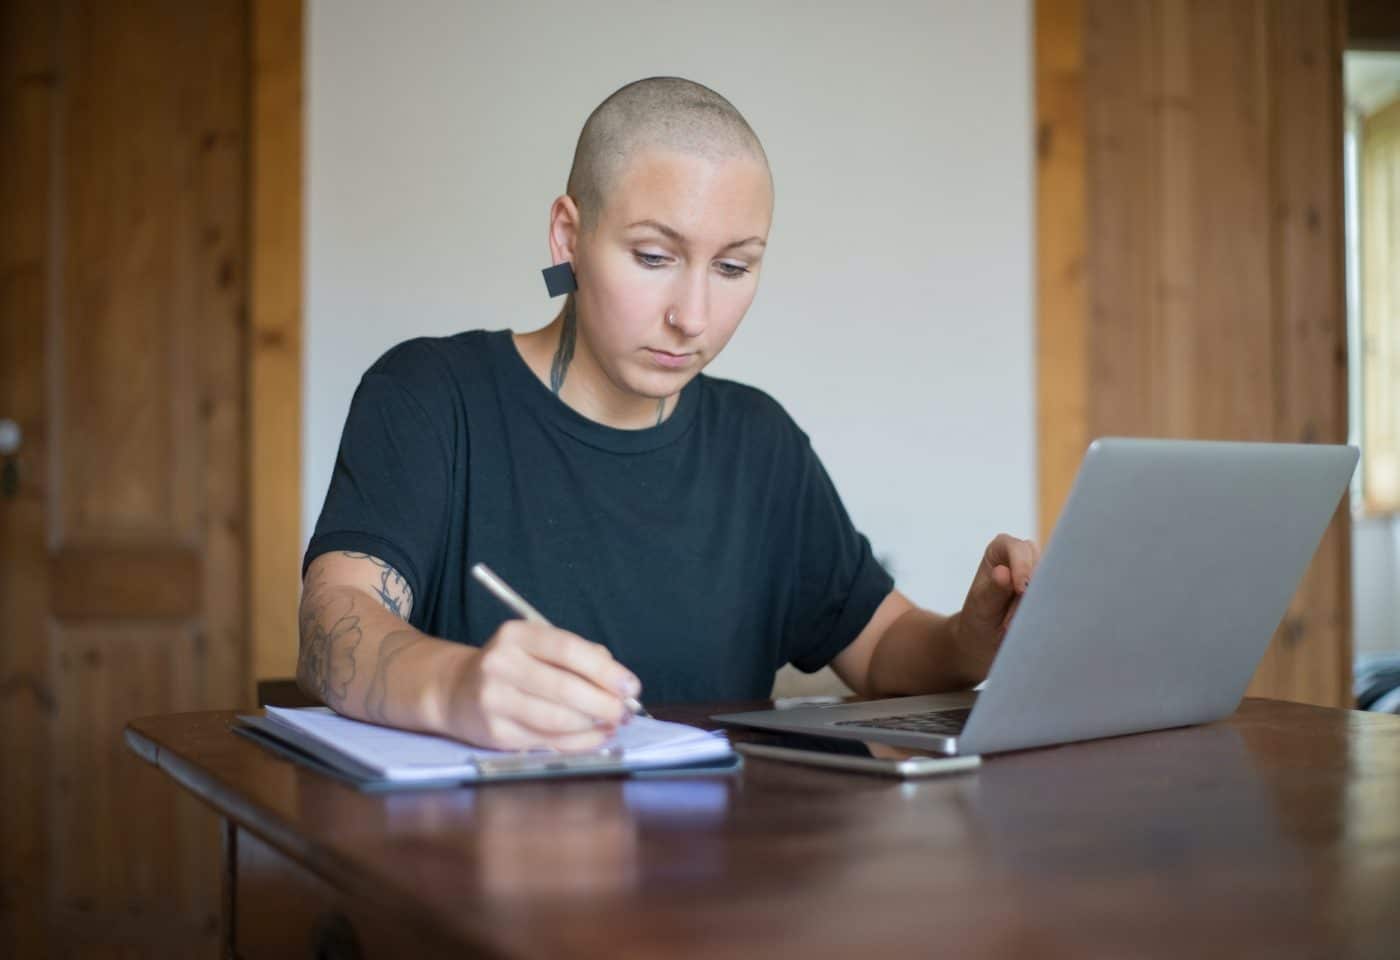 une femme en train d'écrire sur un papier avec sa main droite, sur son ordinateur avec la main gauche